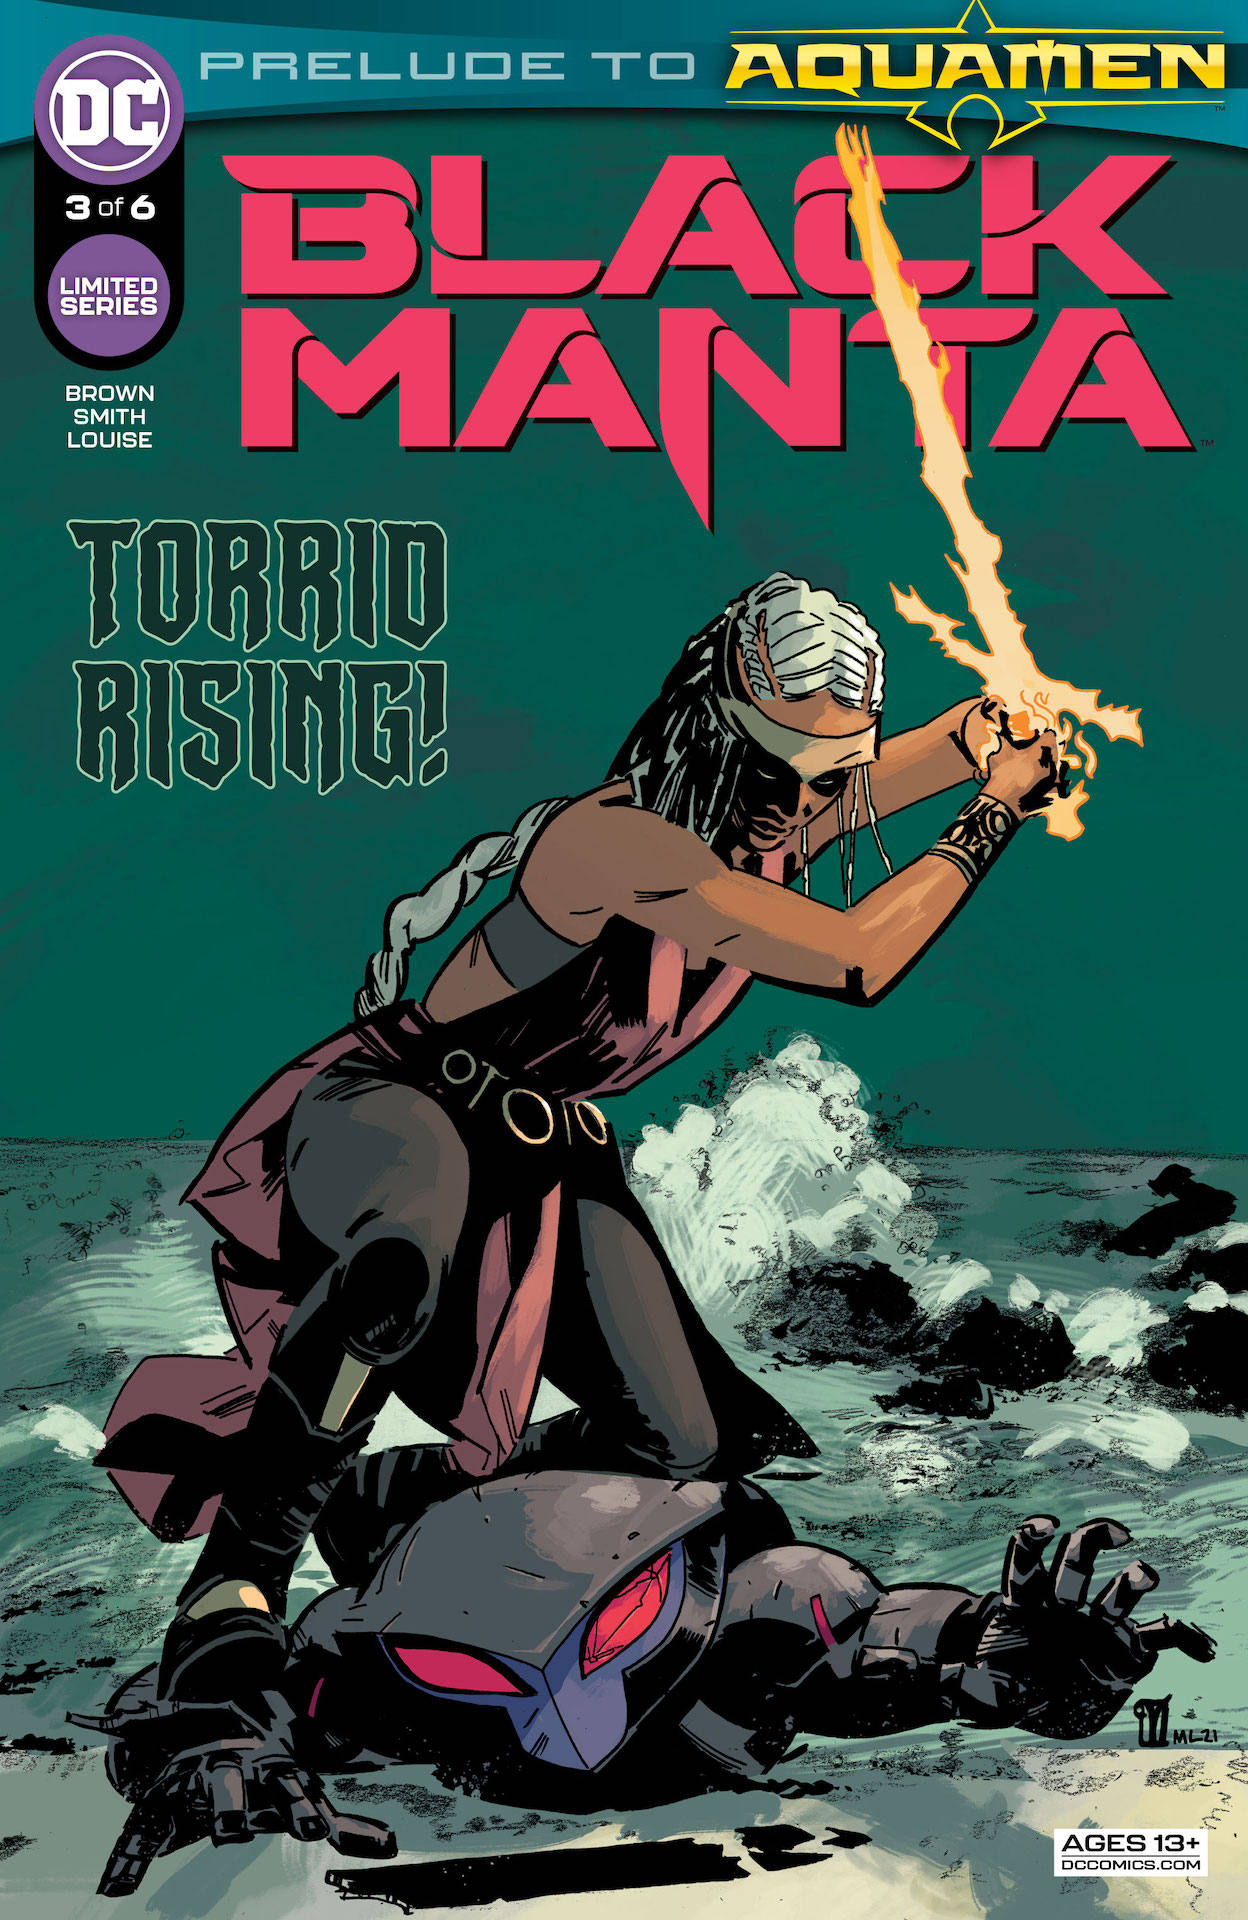 DC Preview: Black Manta #3